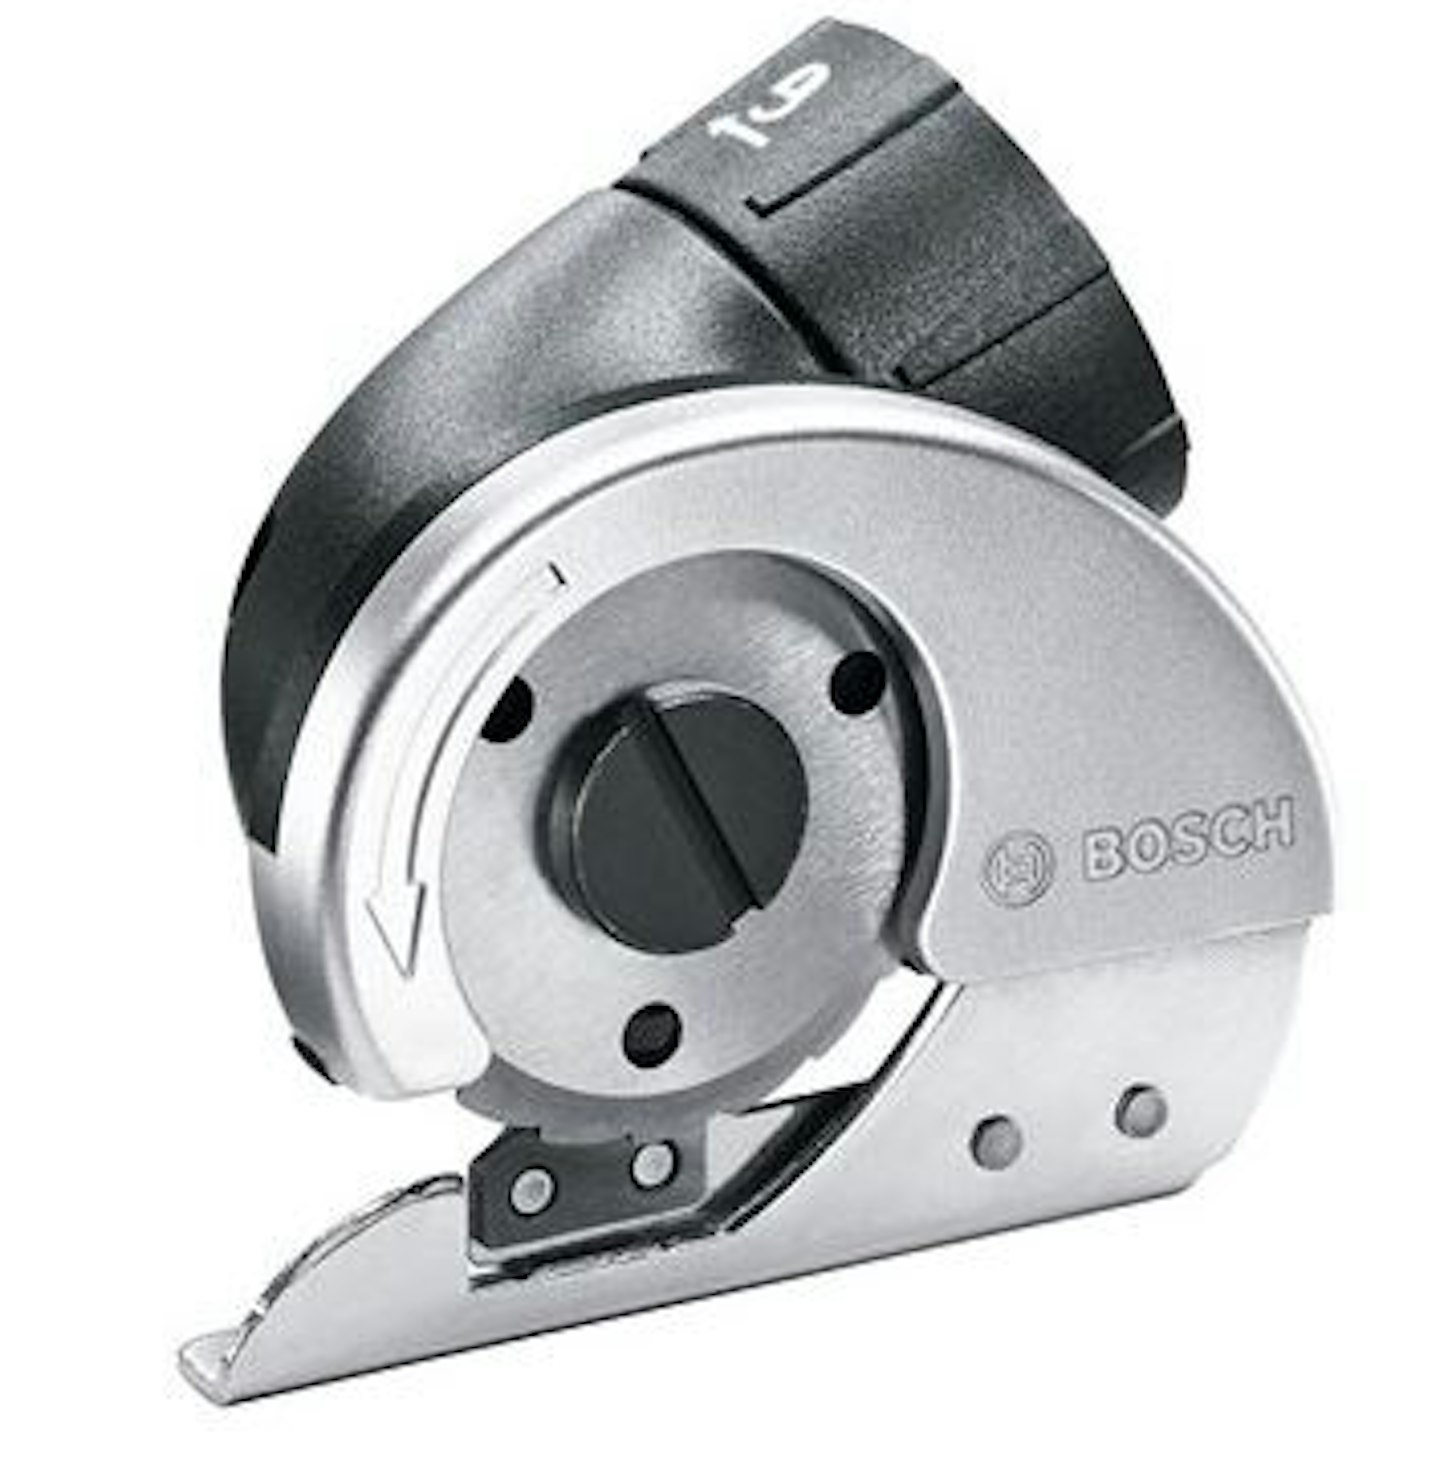 Bosch IXO Cutter Adapter